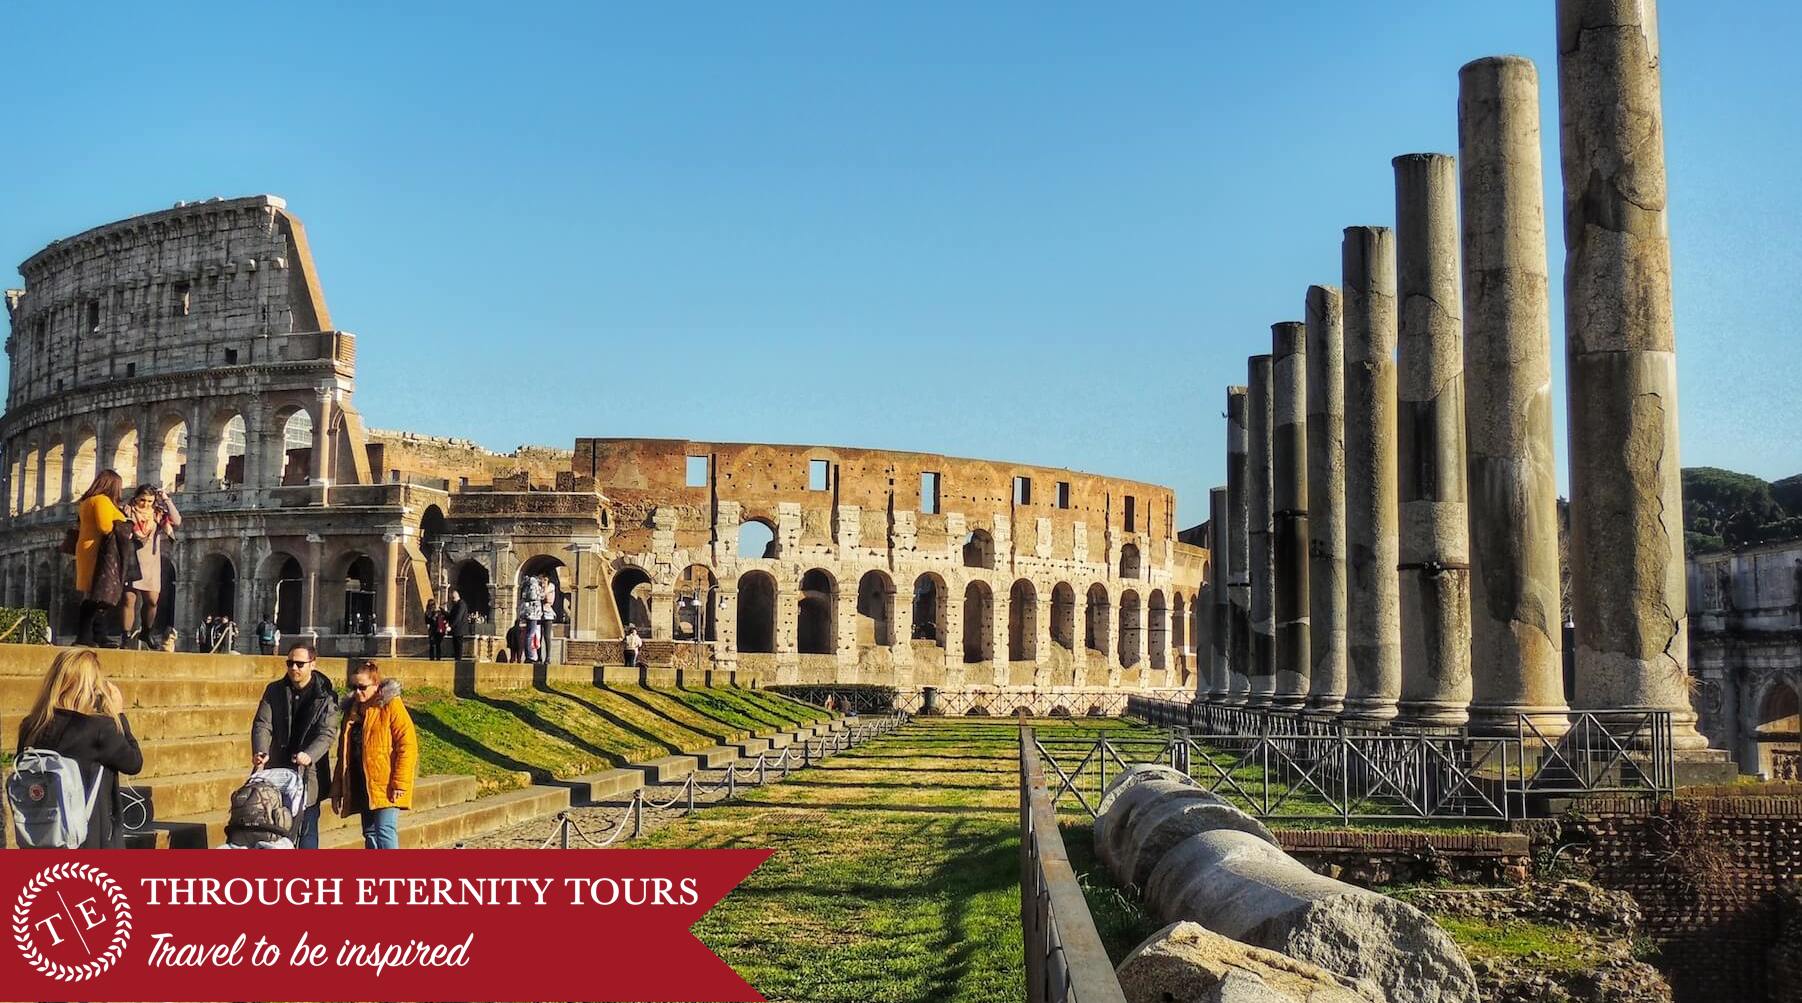 Colosseum Virtual Tour | ThroughEternity - Through Eternity Tours